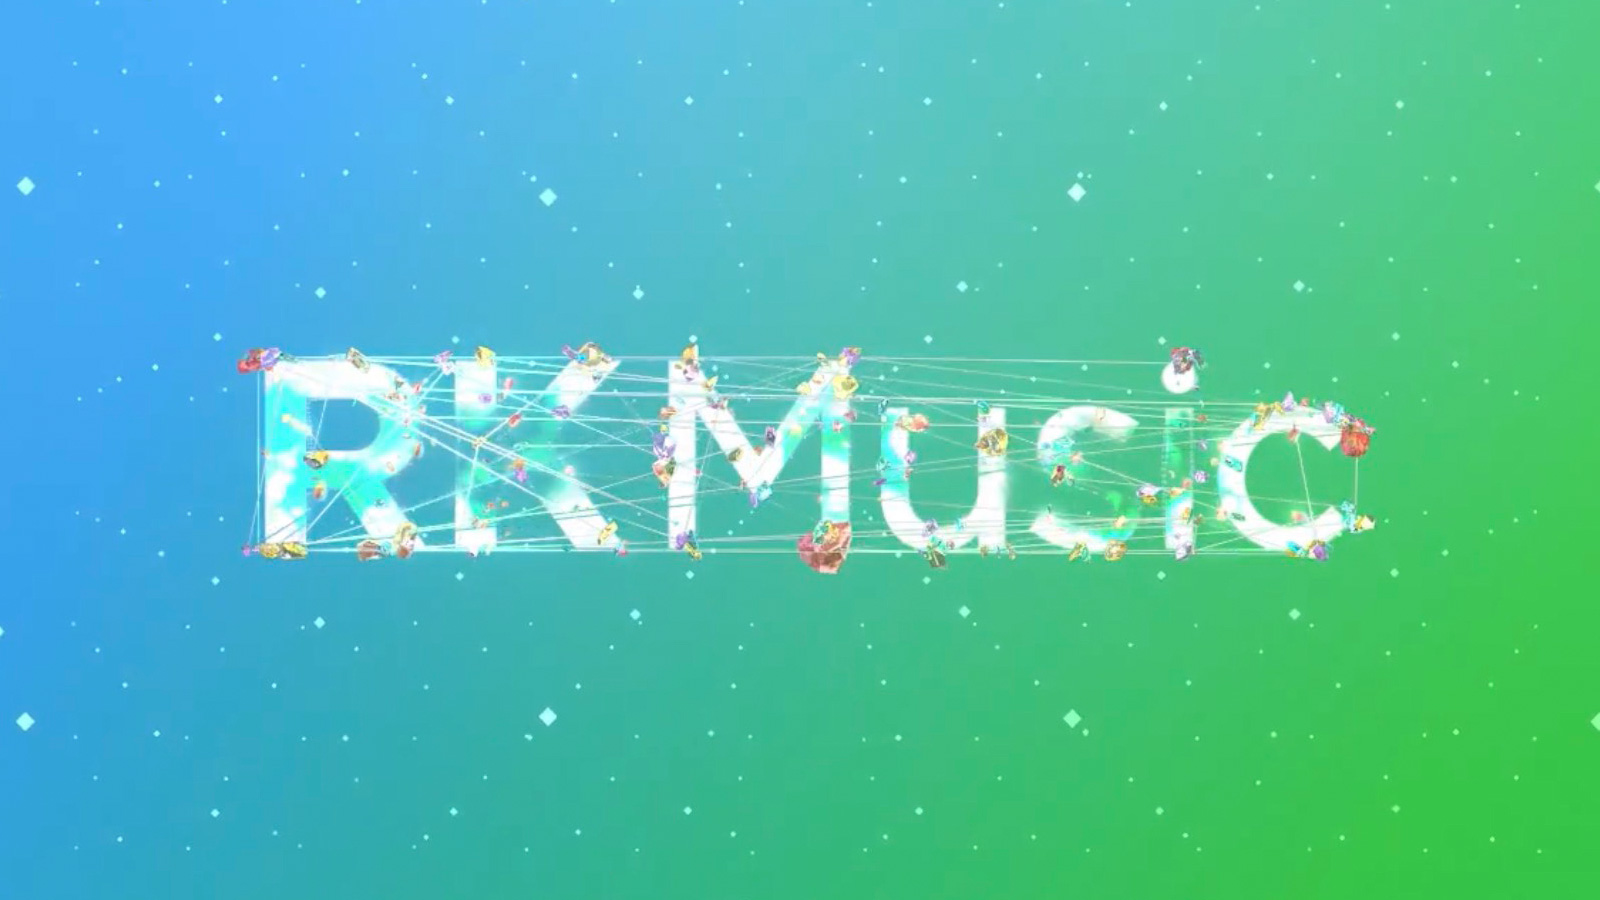 Motion logo for RK Music